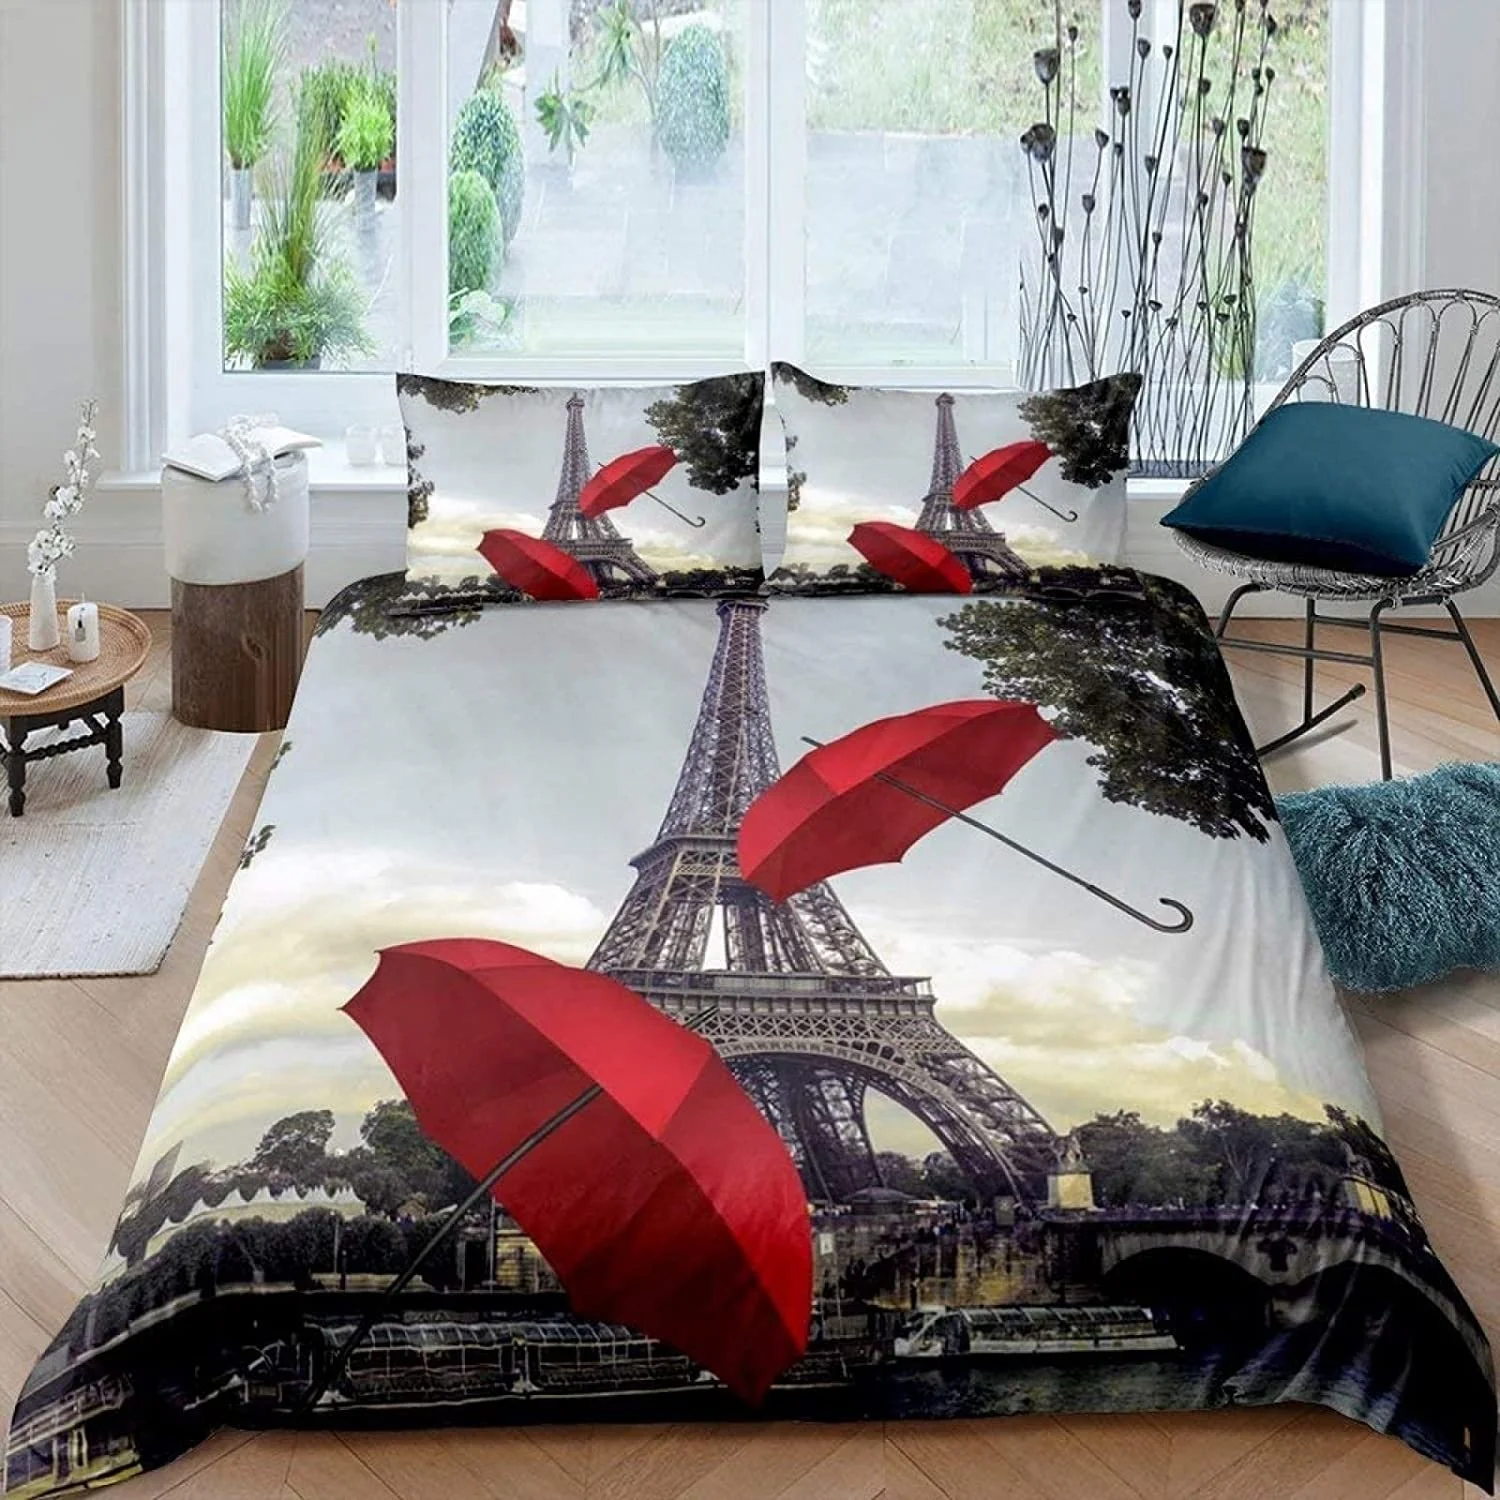 

Paris Duvet Cover Vintage Eiffel Tower Red Umbrella Soft Breathable Paris Bedding Set Microfiber Double Queen King Quilt Cover